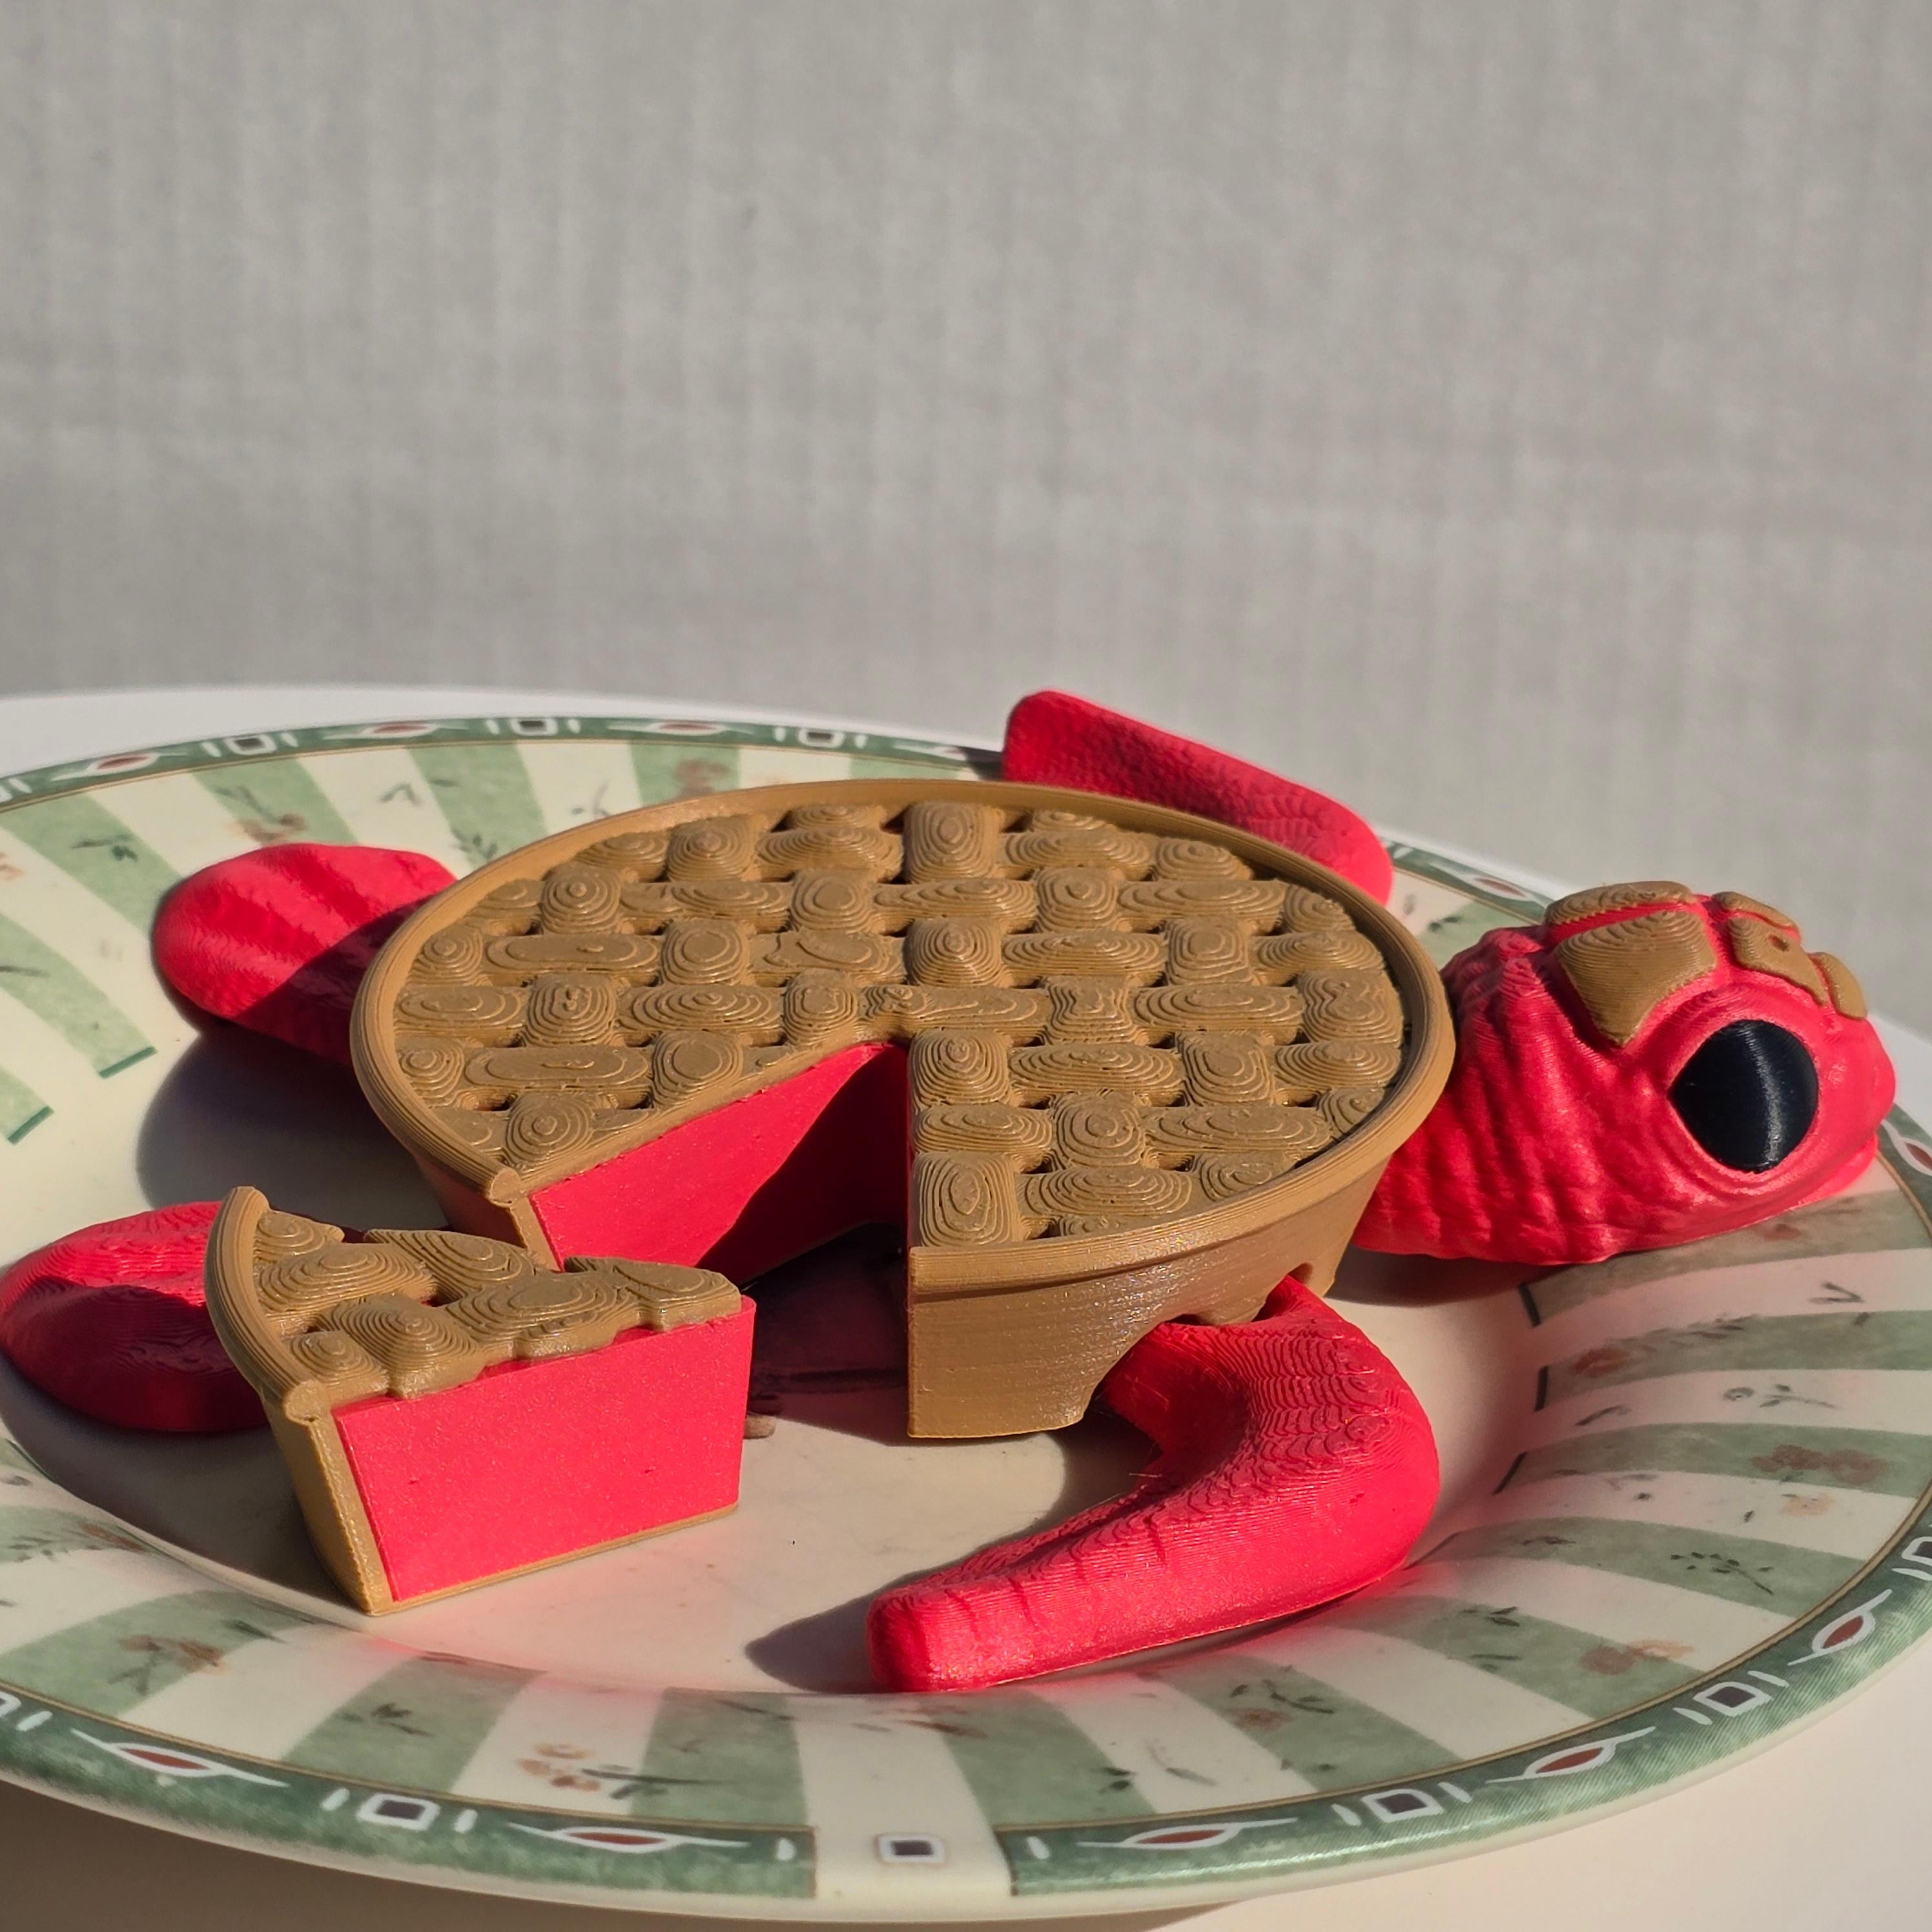 Rhubarb Pie & Punk Rock Sea Turtles 3d model